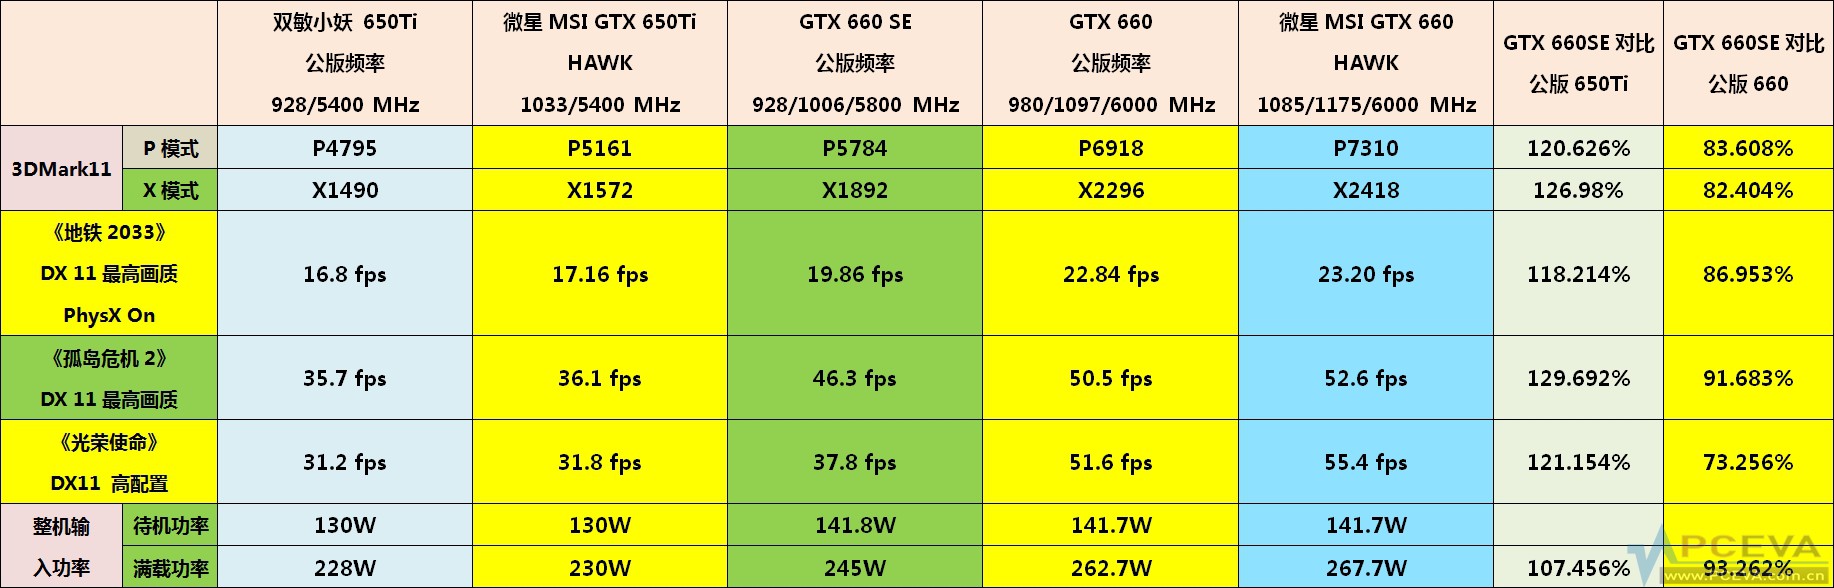 Immagine pubblicata in relazione al seguente contenuto: Specifiche e benchmark della nuova GeForce GTX 660 SE di NVIDIA | Nome immagine: news18679_NVIDIA-GeForce-GTX-660_4.jpg